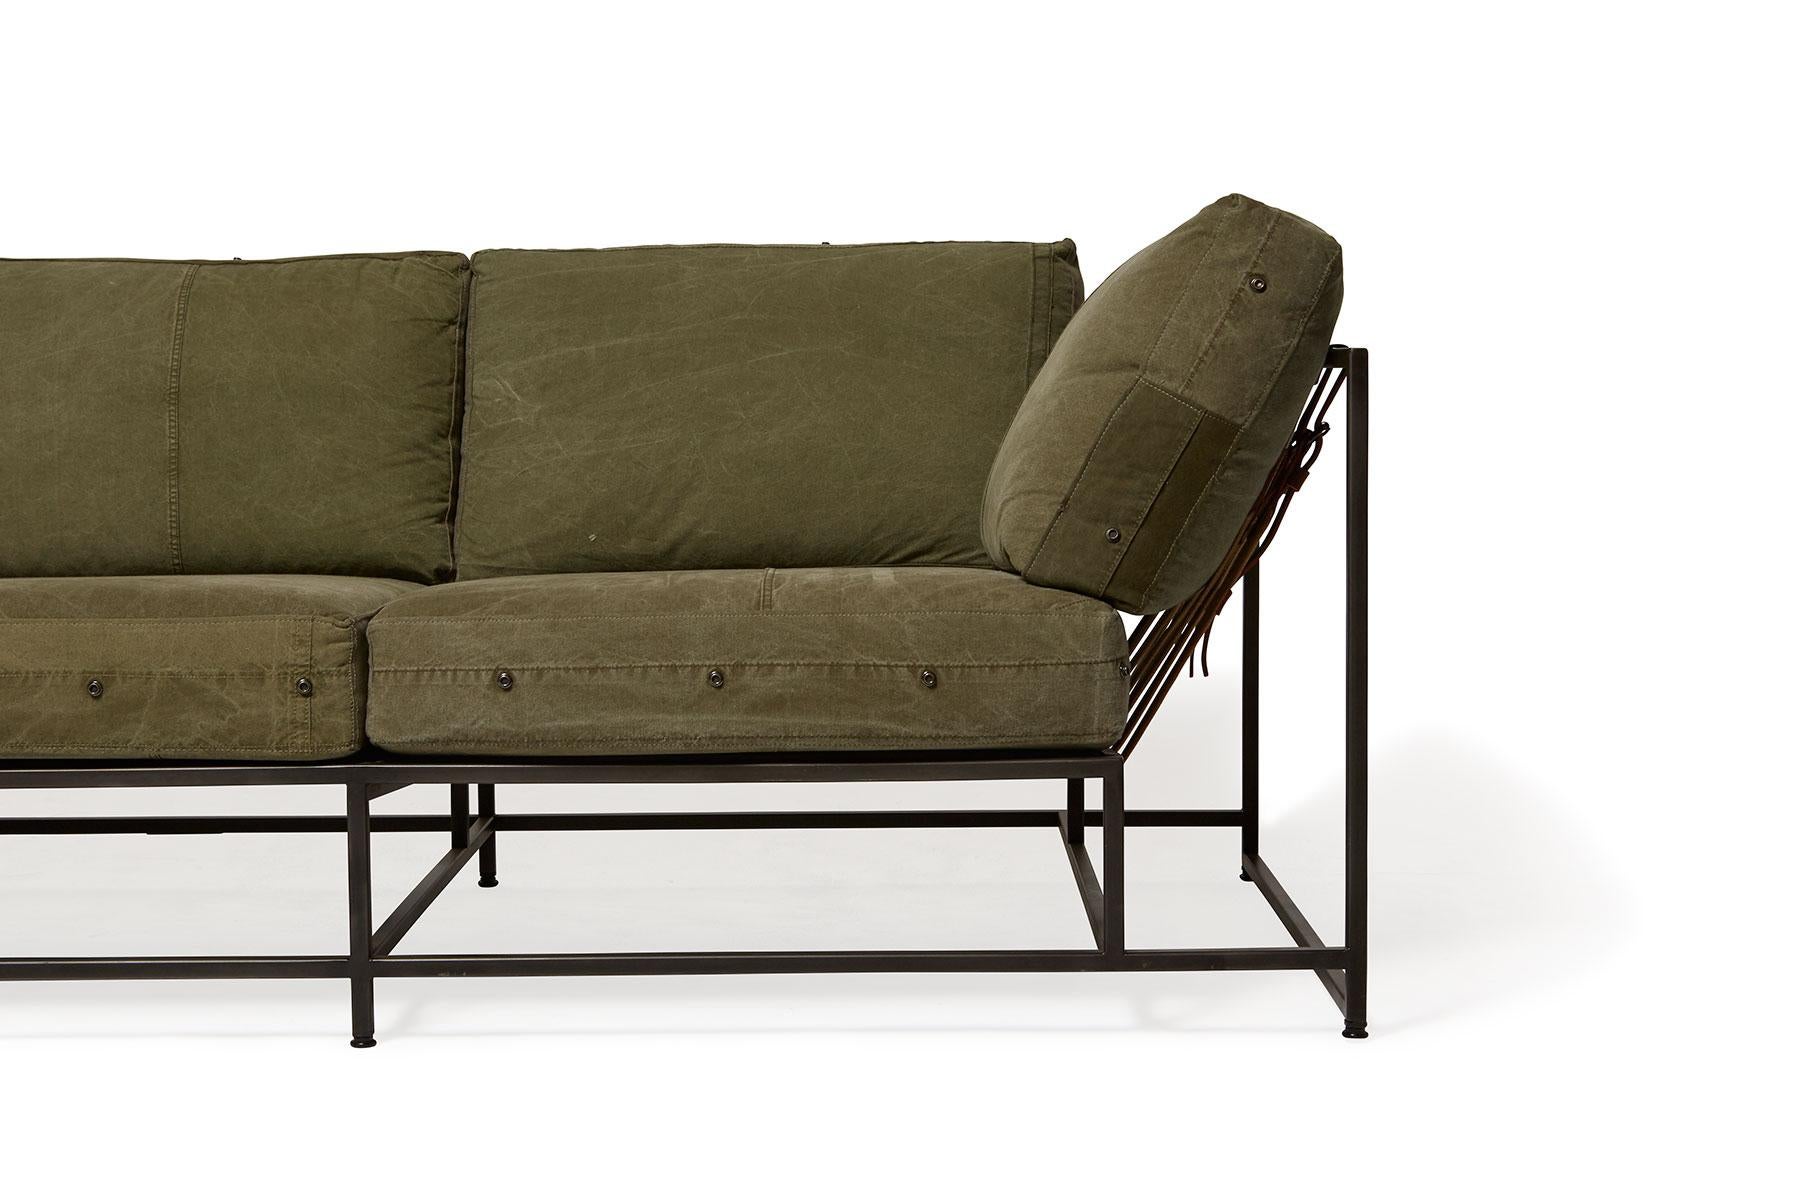 Dieses 2011 entworfene Sofa war das erste Stück der Inheritance Collection von Stephen Kenn. Ausgehend von der Neugierde, wie Möbel konstruiert wurden, ist die Kollektion das Ergebnis einer Neuinterpretation typischer Polstersitze.

Seit dem ersten